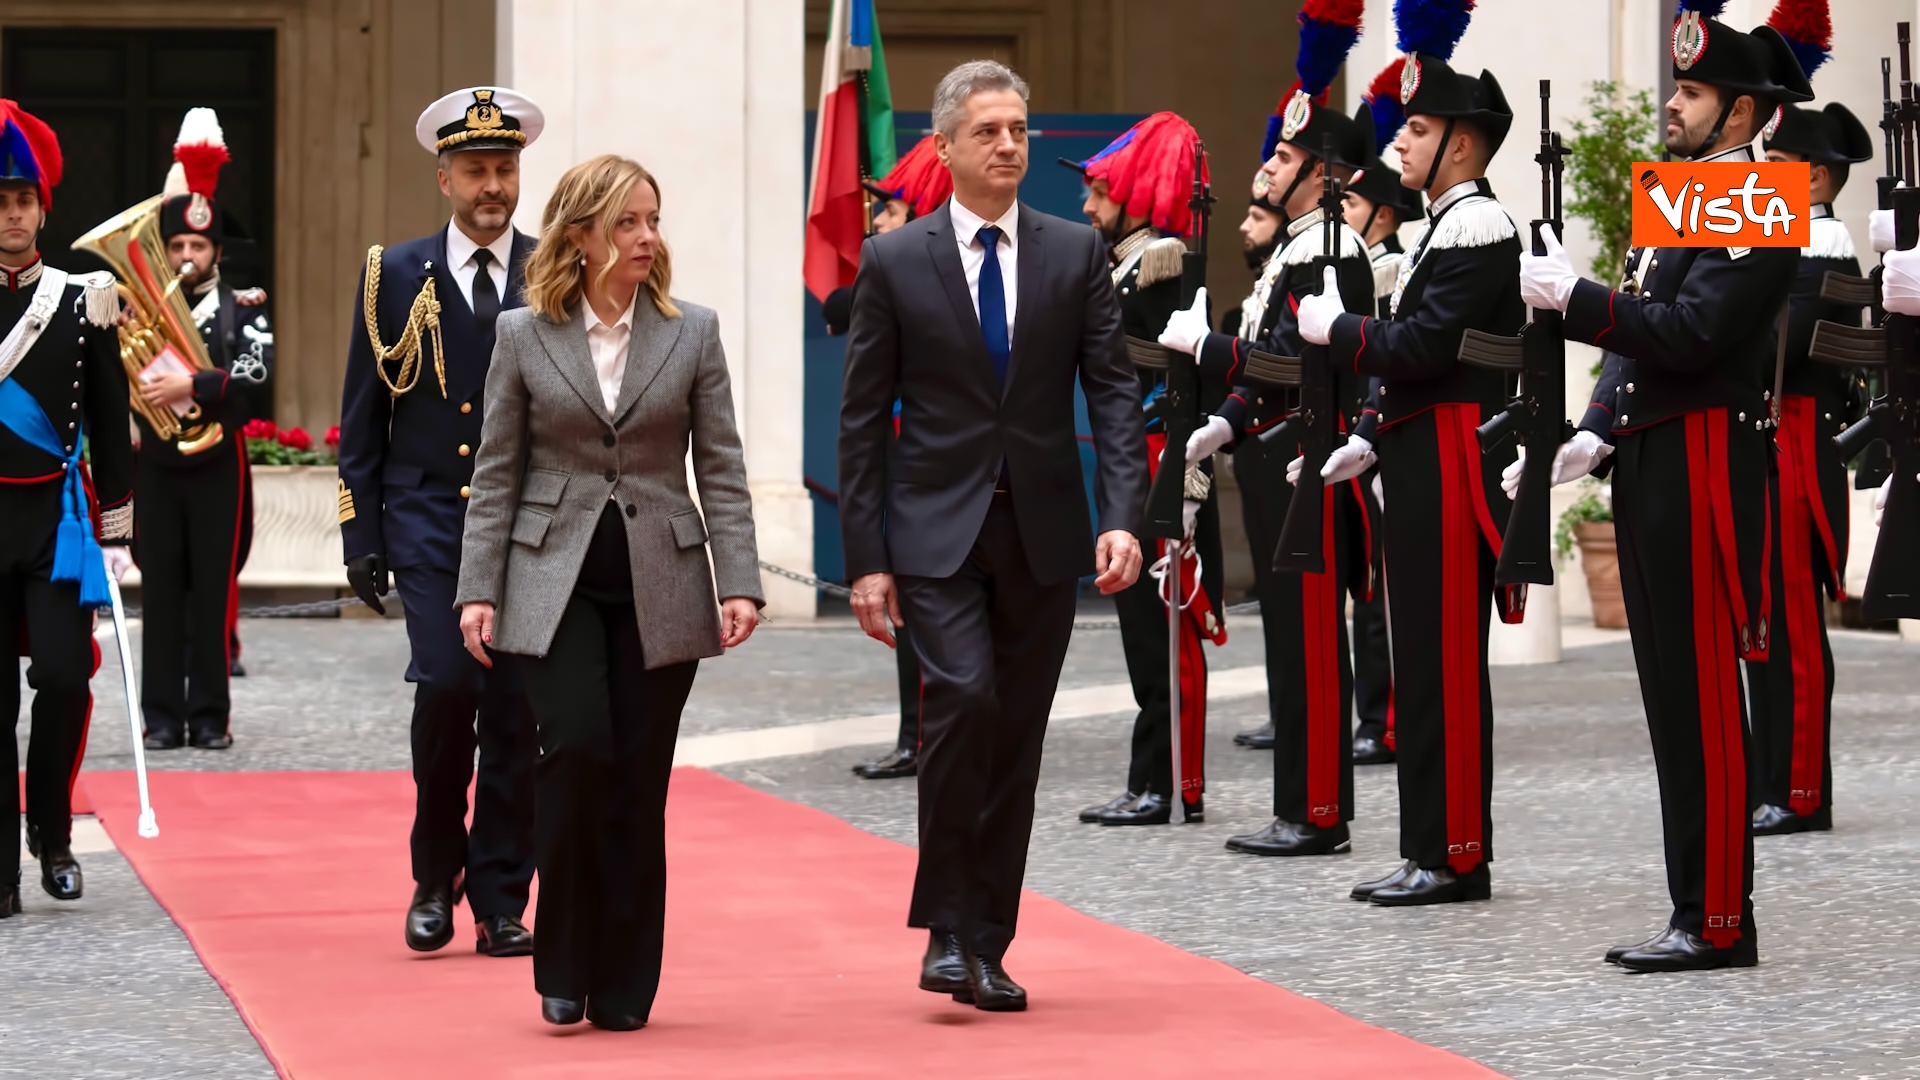 14-11-23 Italia-Slovenia, Meloni accoglie il Primo Ministro Golob a Palazzo Chigi_05